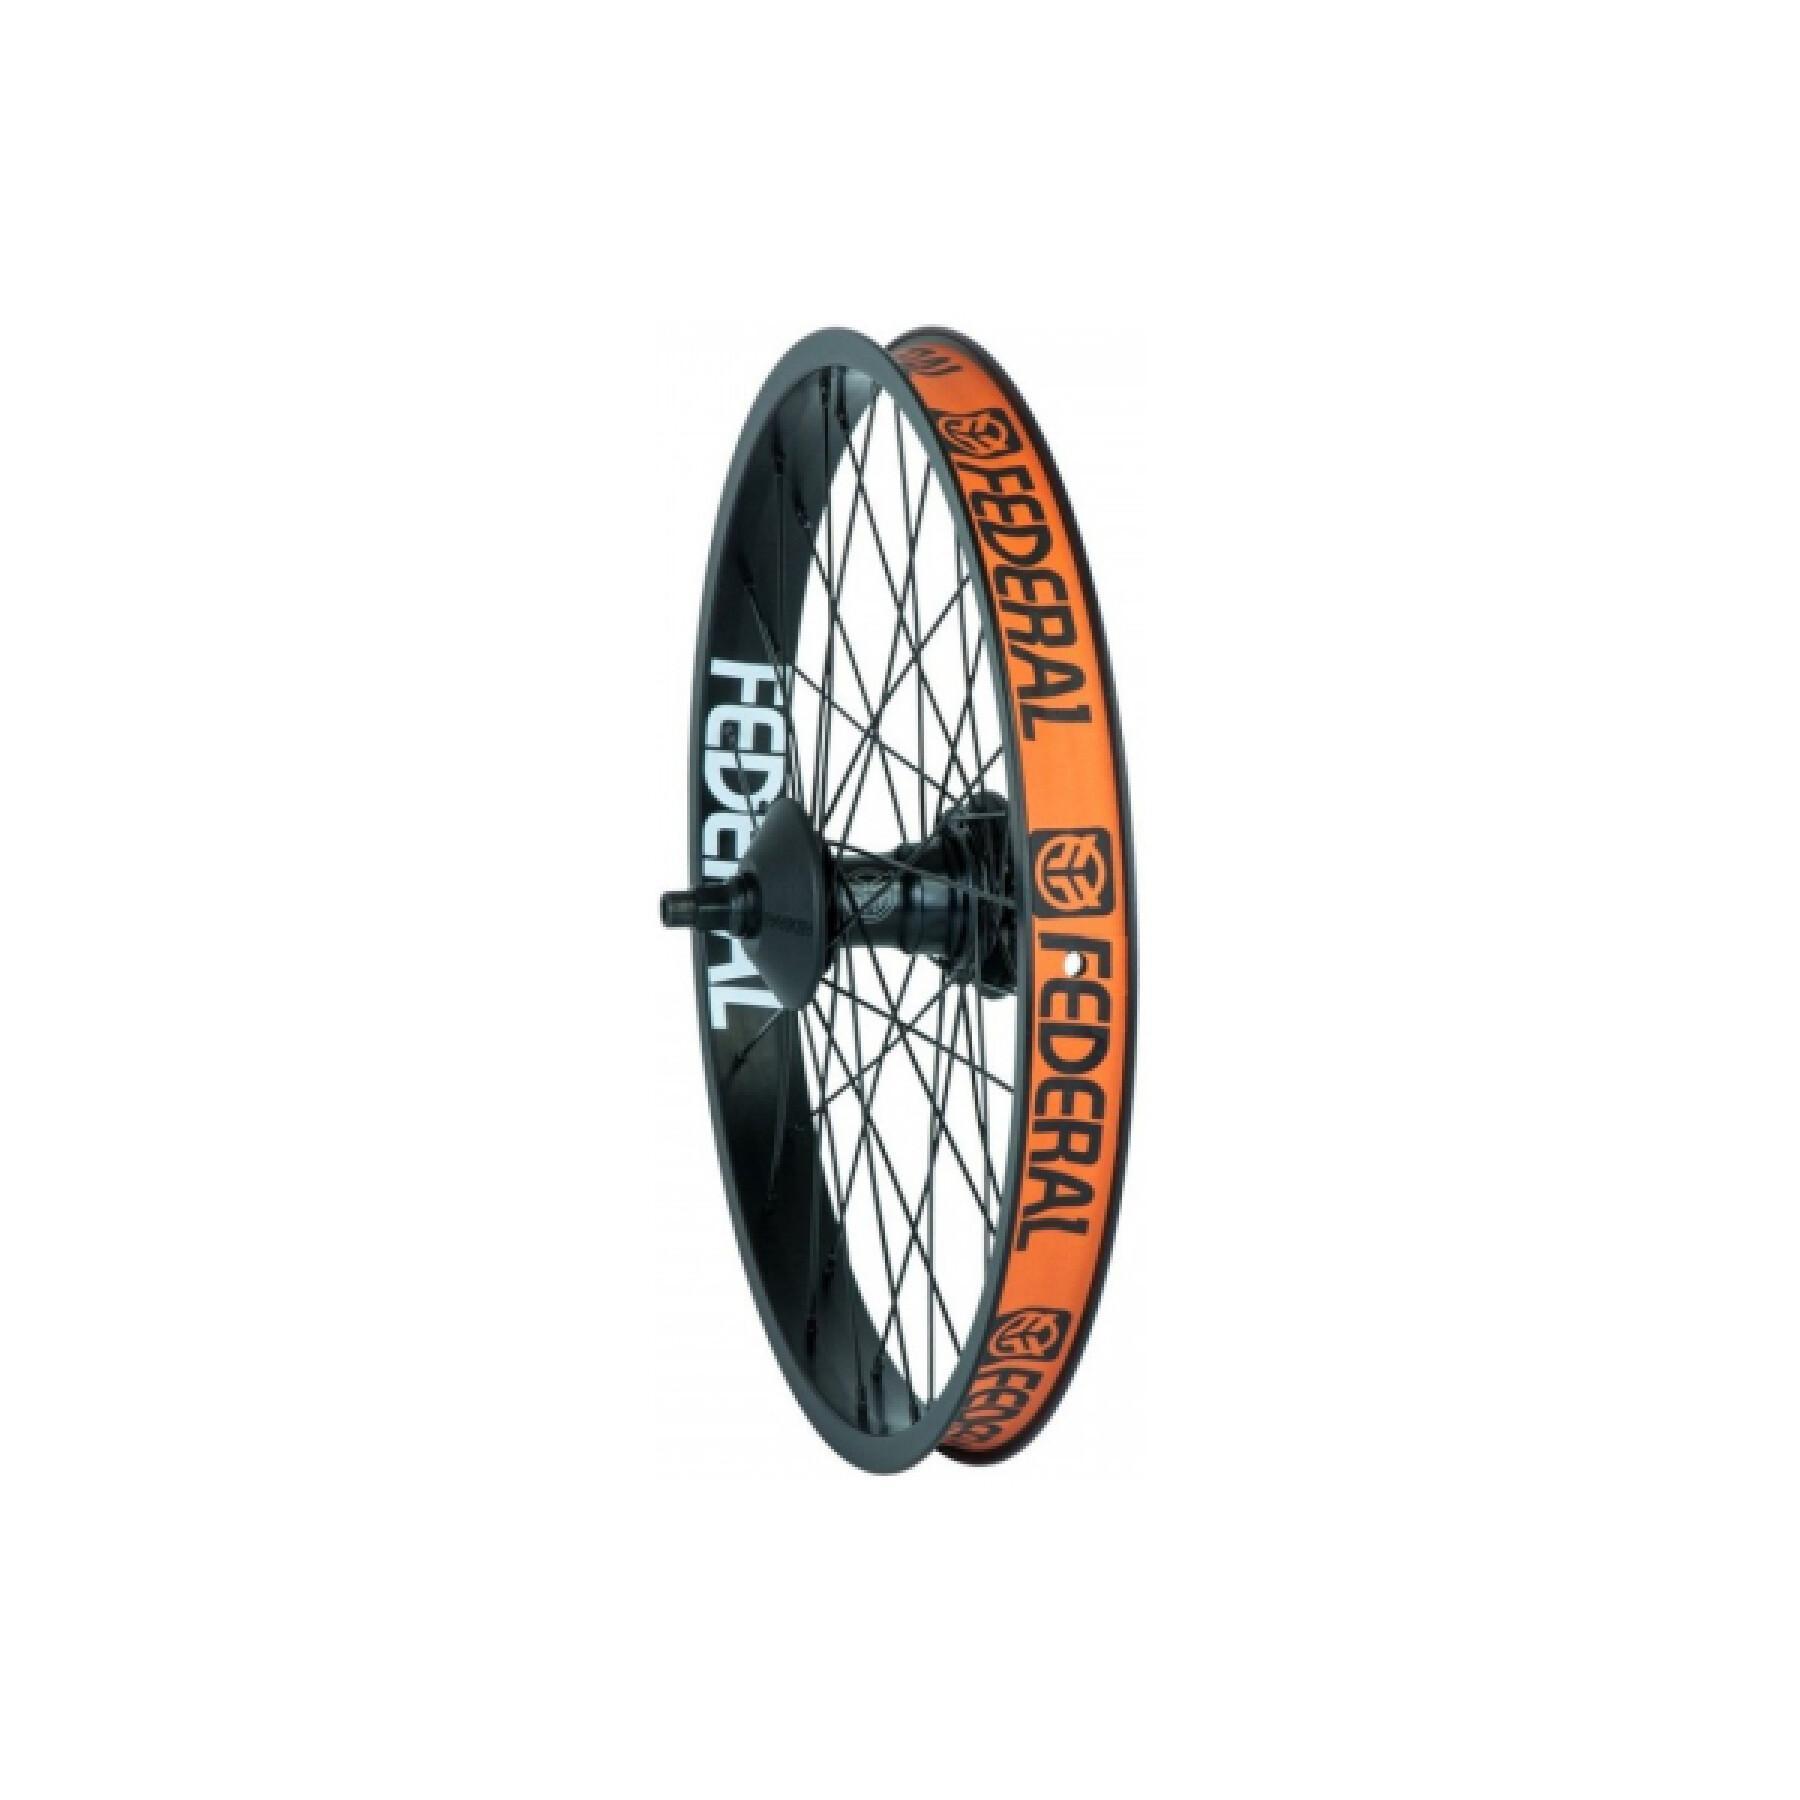 Roda traseira de bicicleta Federal Freecoaster Motion Lhd Stance